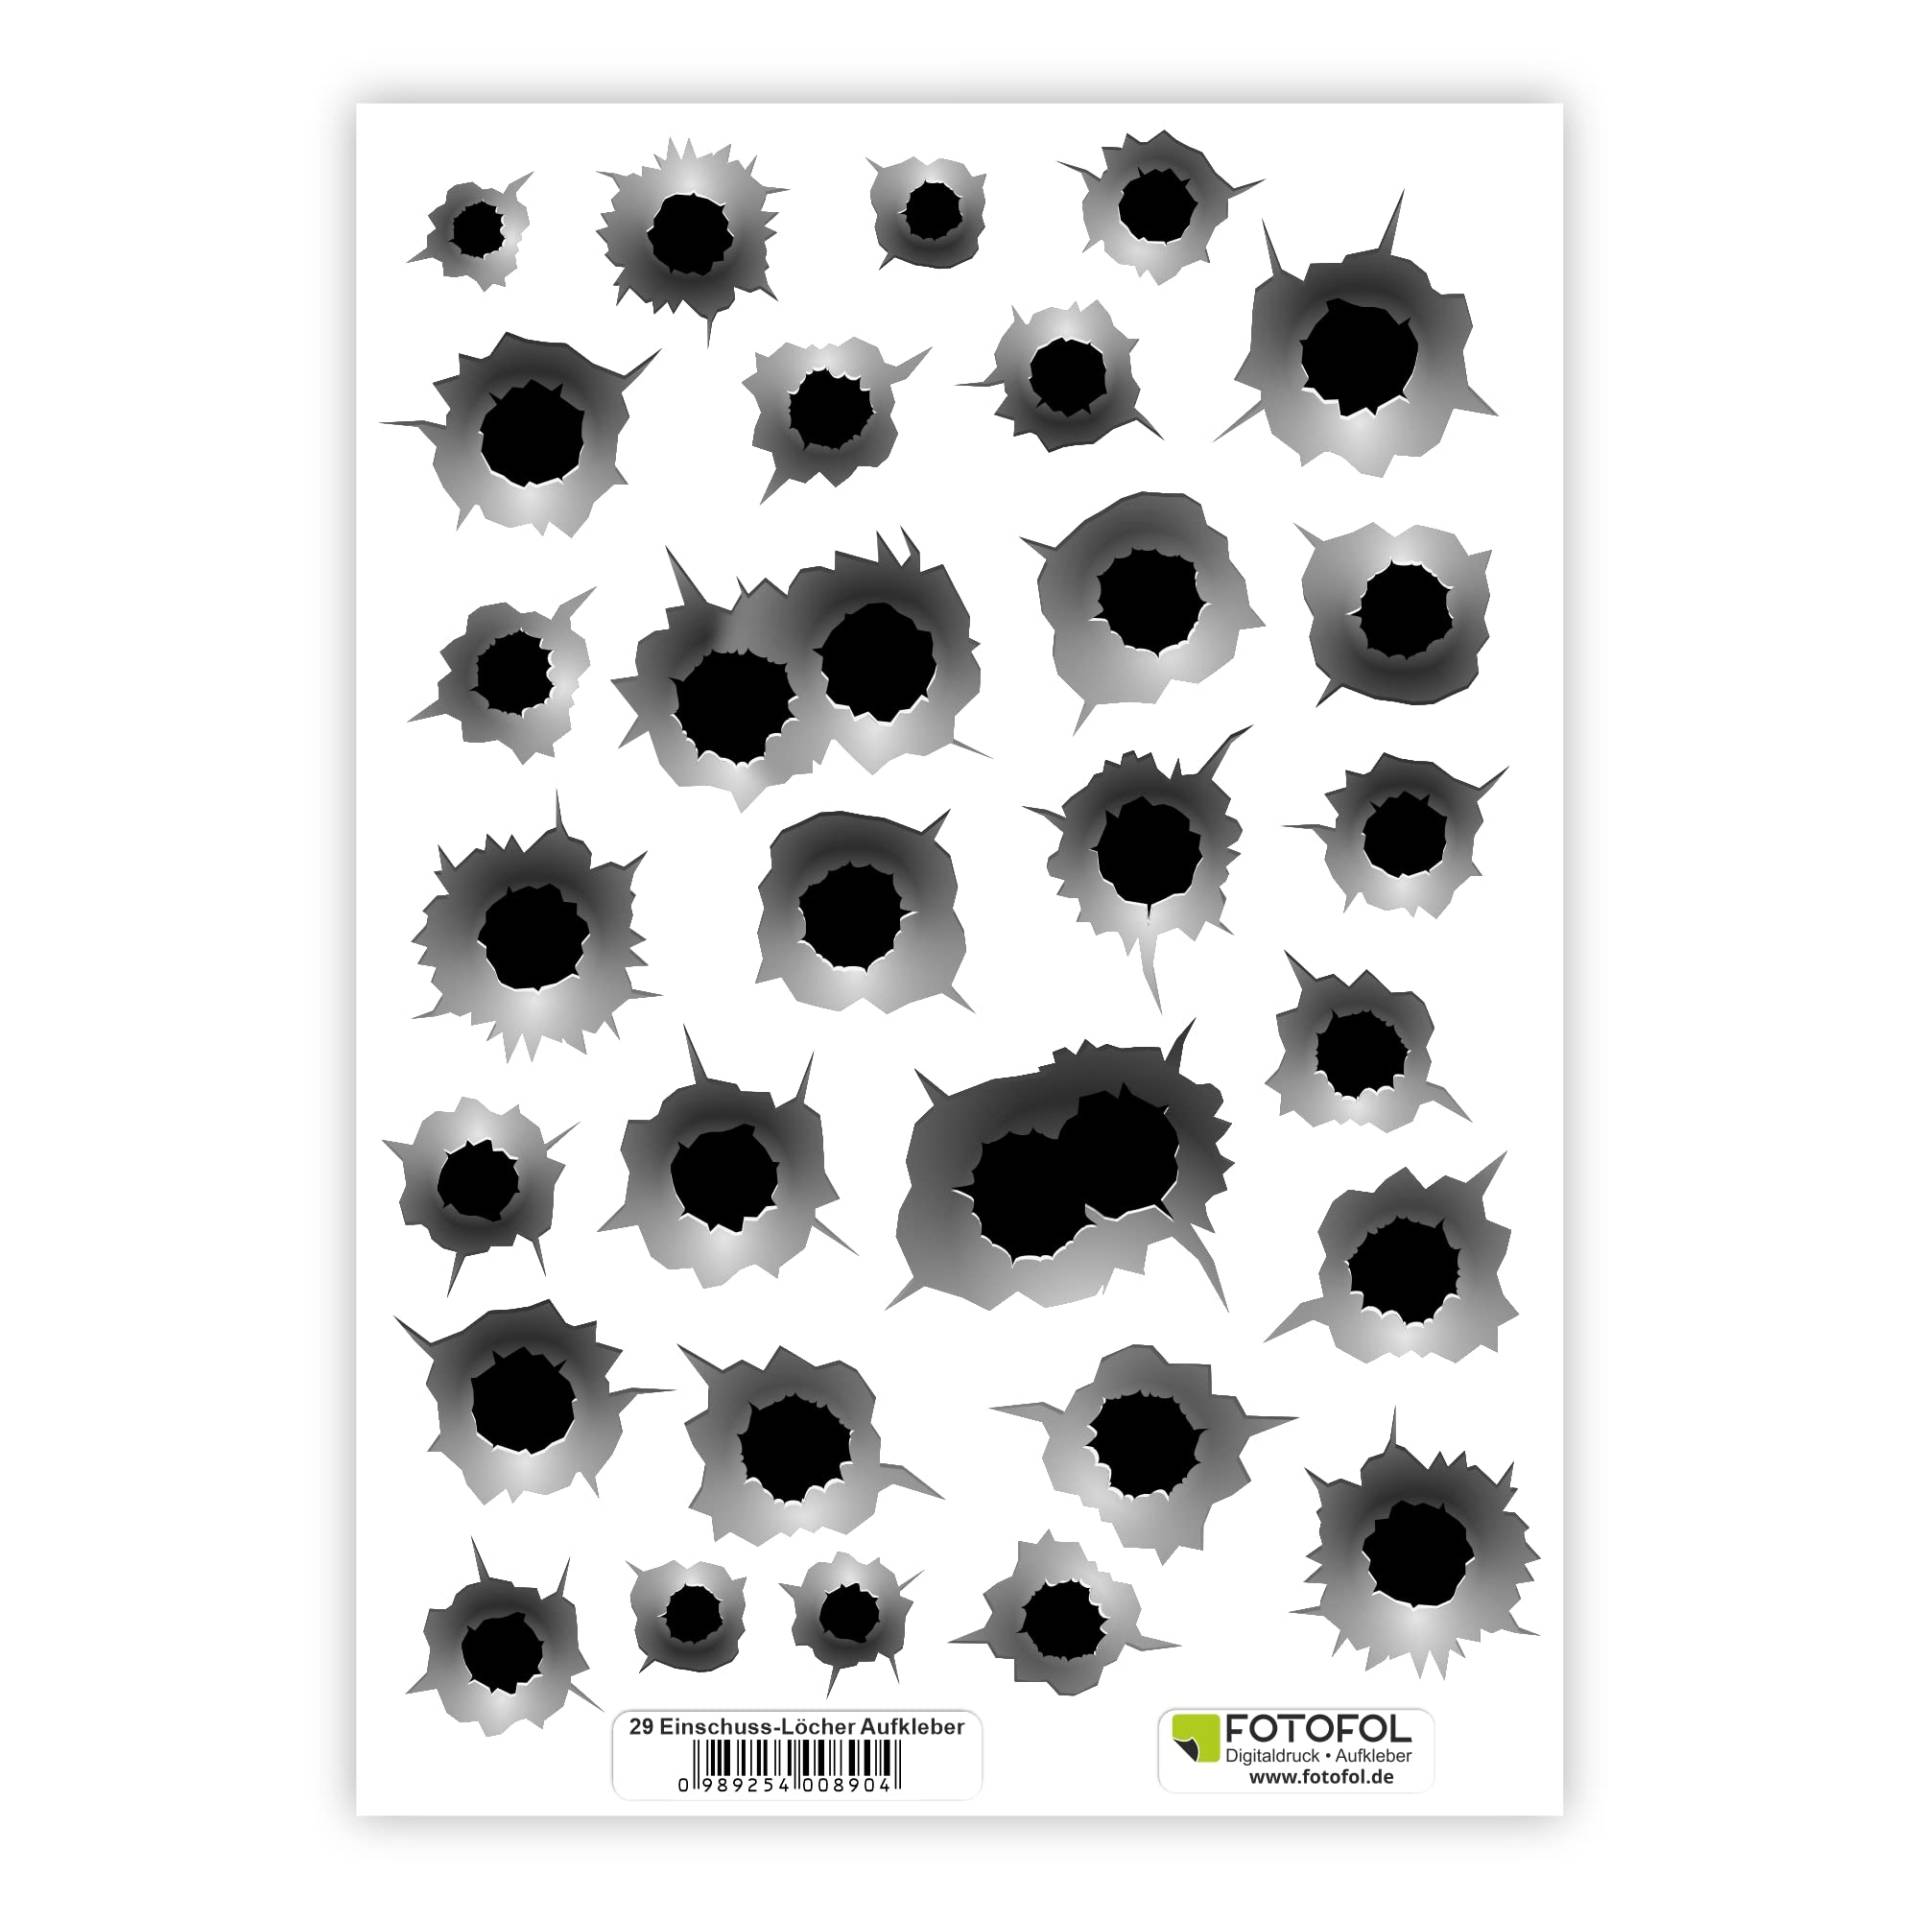 FOTOFOL Einschusslöcher Aufkleber Set in 3D Optik - wetterbeständig - Sticker Bullet-Holes - für Auto, Fahrzeuge, Roller, Moped, Motorrad-Helm, Fahrrad, Laptop, Smartphone von FOTOFOL